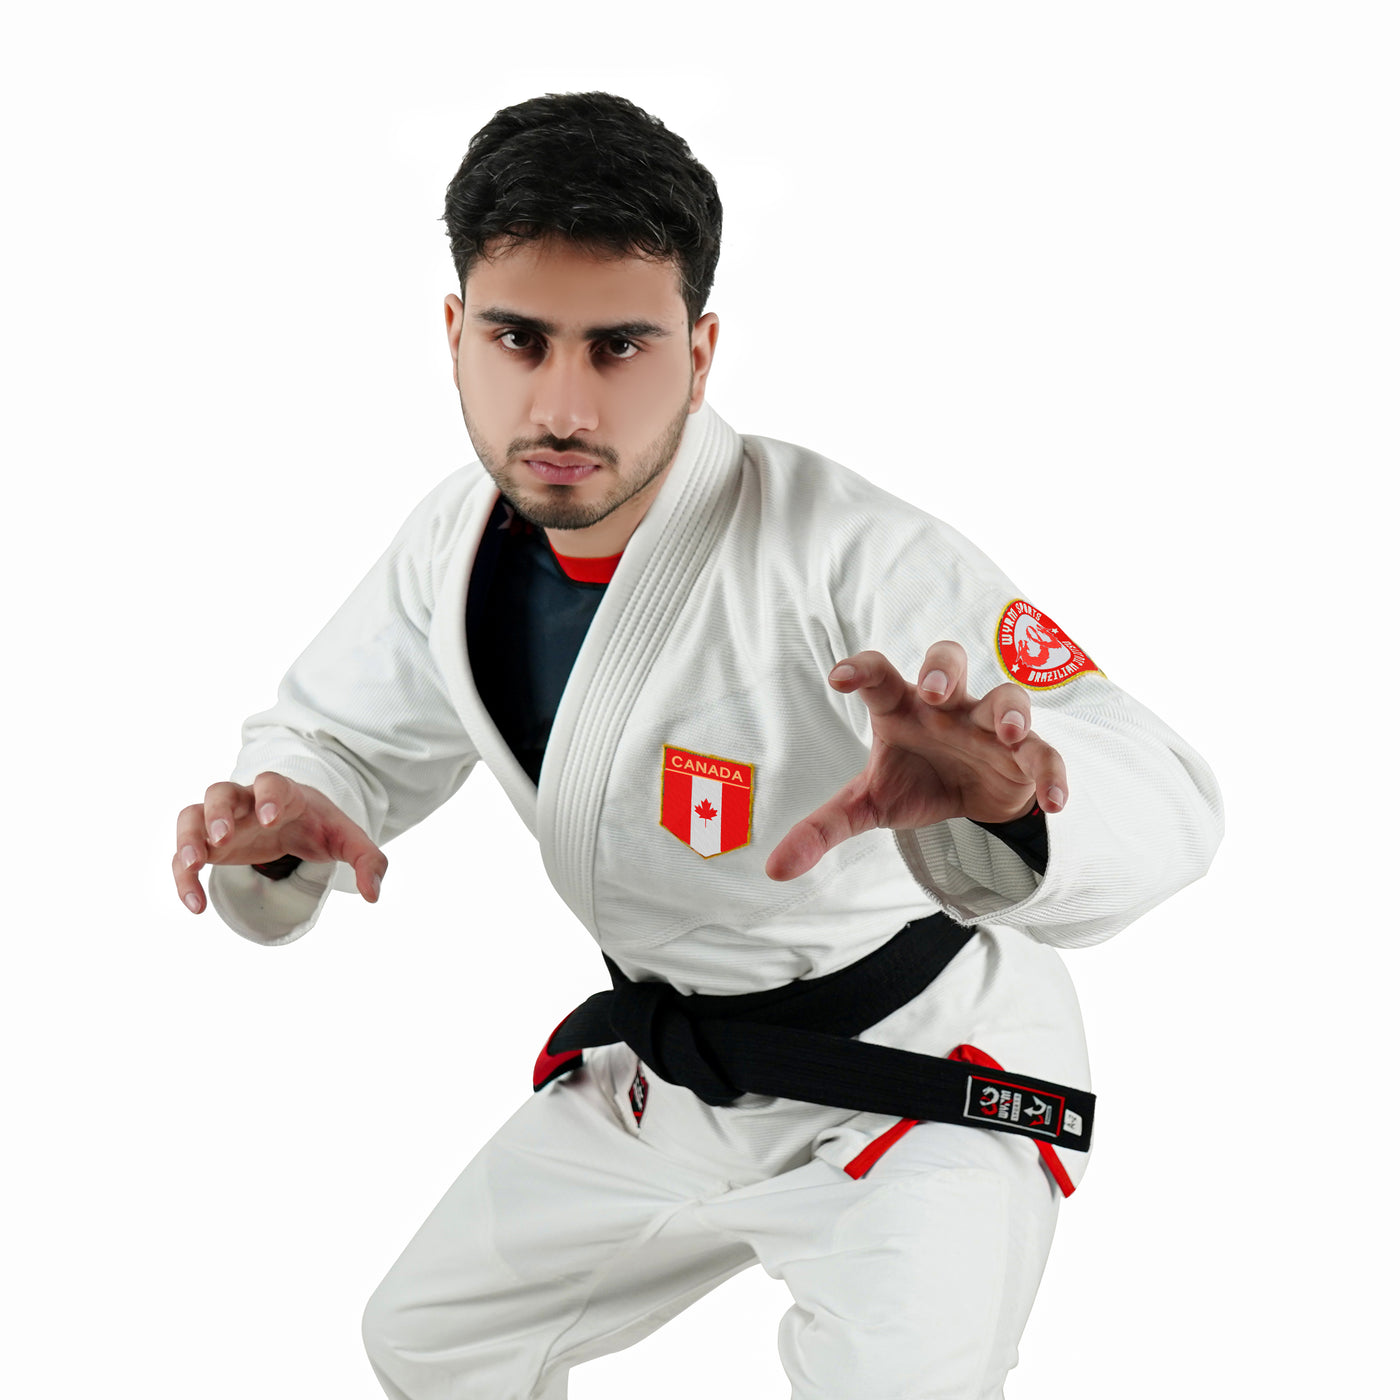 Canadian White Brazilian Jiu Jitsu Gi With Built-in Rash Guard